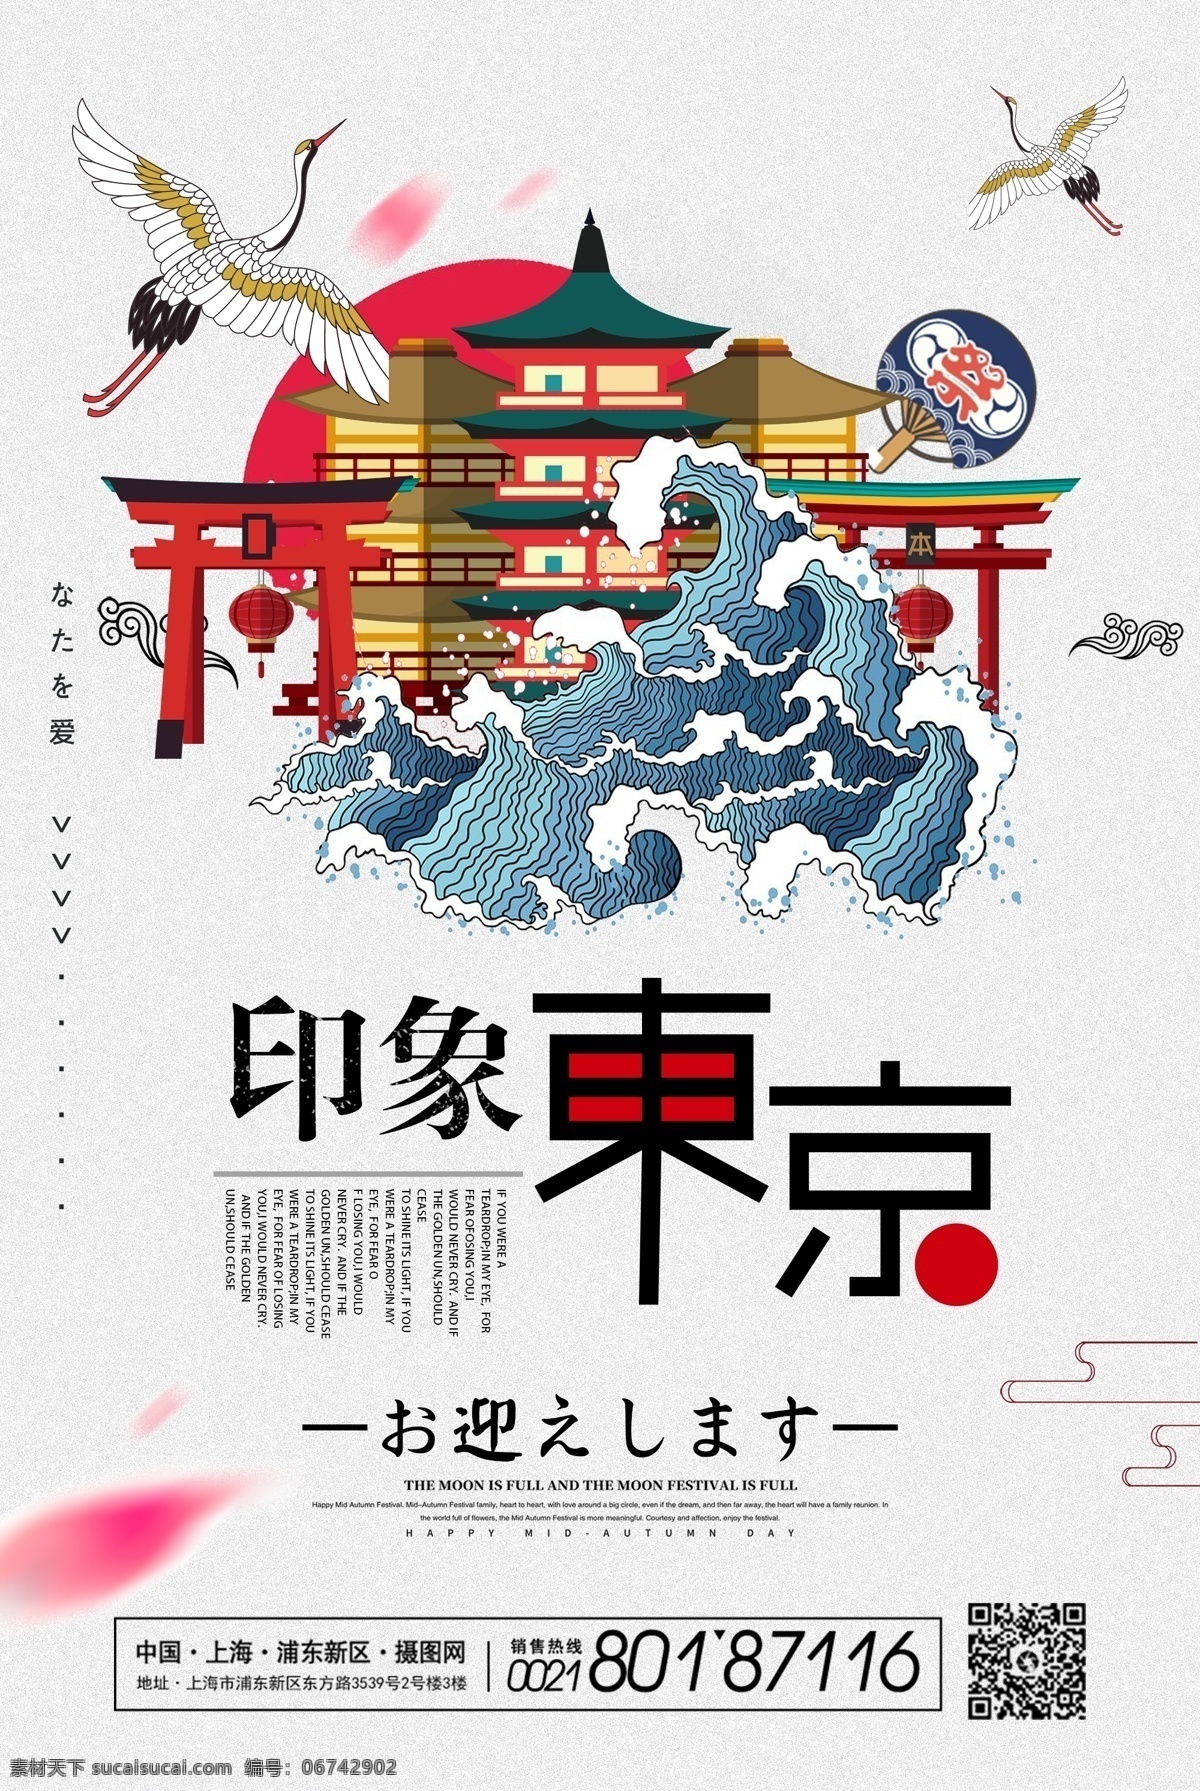 新年 旅行 日本 东京 海报 去旅游 去旅行 新年旅游 新年旅行 旅行海报 猪年旅行 玩转世界 跨年 日本旅游 旅游海报